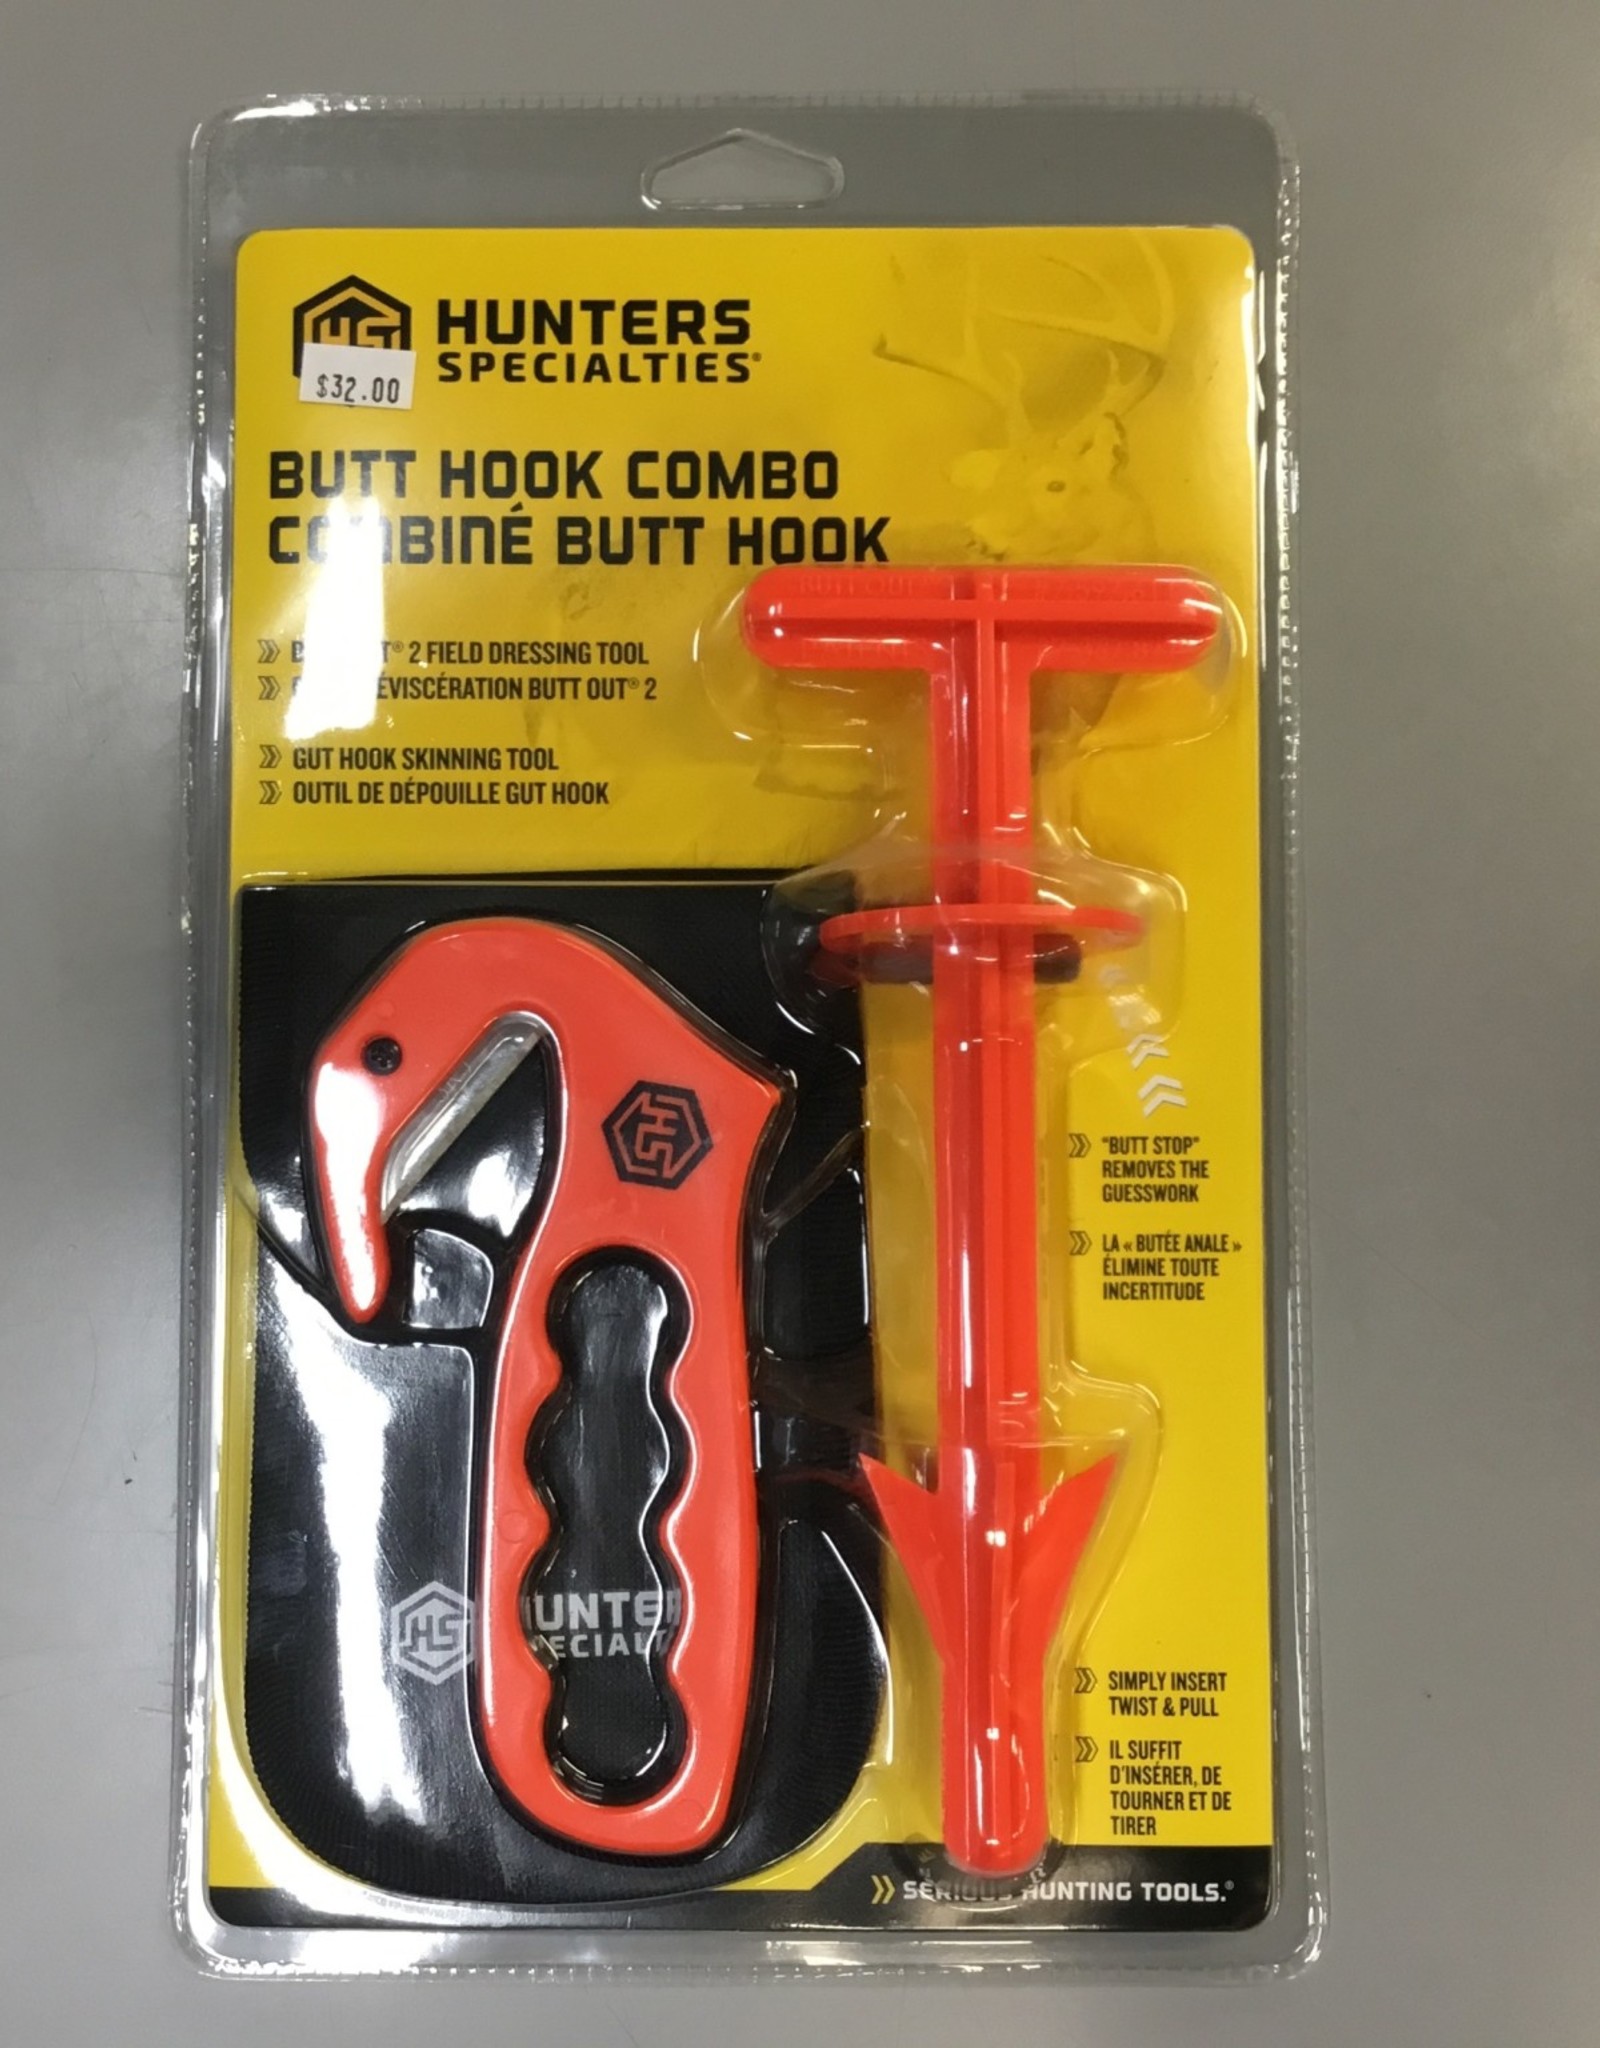 Hunters Specialties Butt Hook Combo